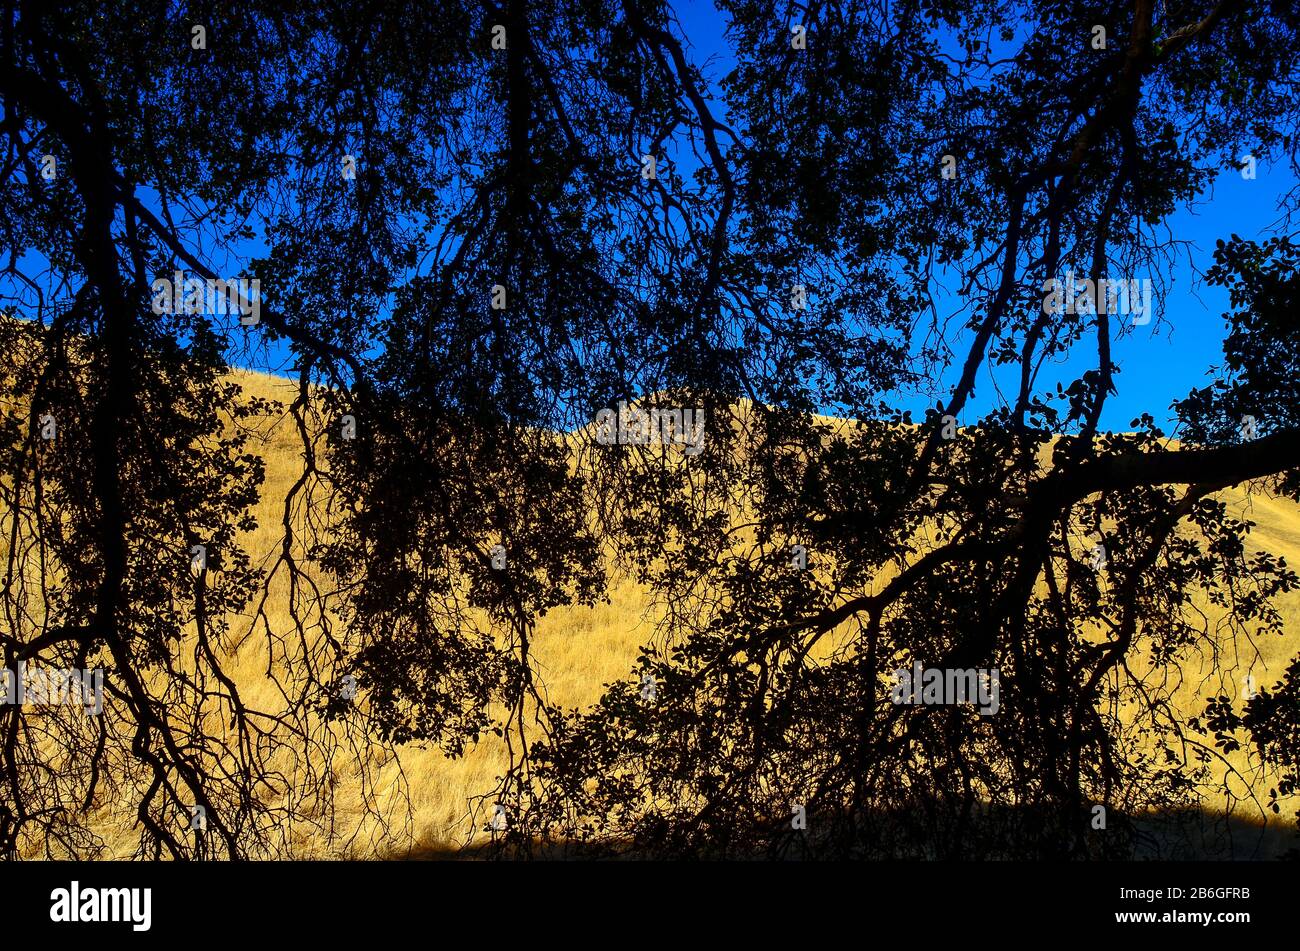 Siedendosi all'ombra sotto un albero di quercia che guarda fuori verso le colline immerse nel calore a Nortonville, East Bay Regional Park, Antioch, California, Stati Uniti. Foto Stock